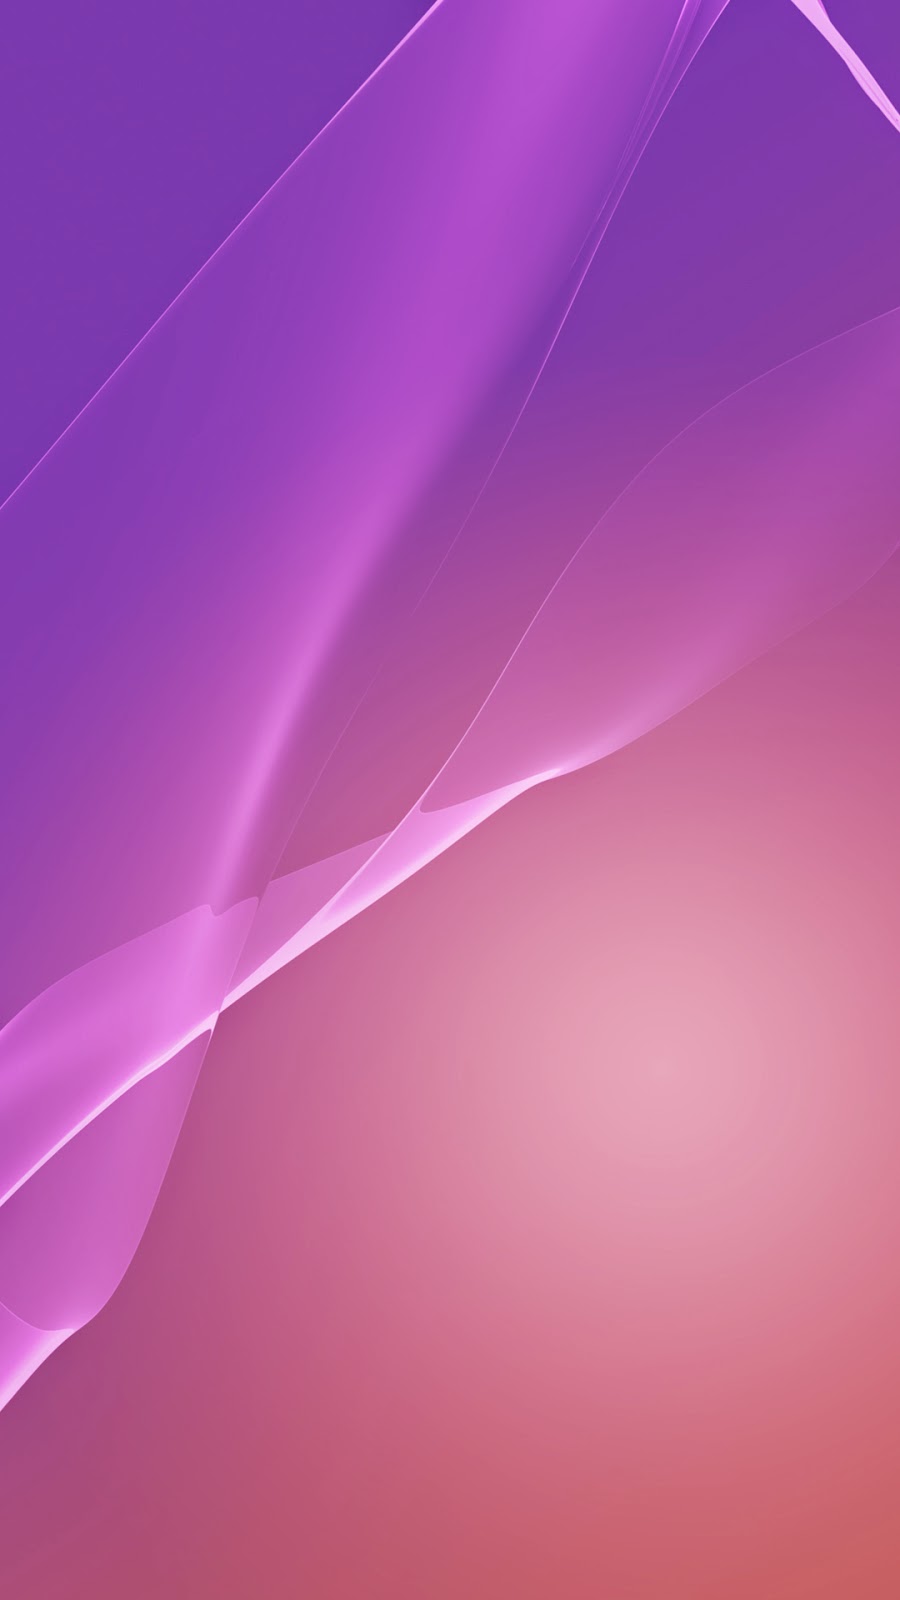 sony xperia fondo de pantalla descargar,violeta,rosado,púrpura,lila,línea